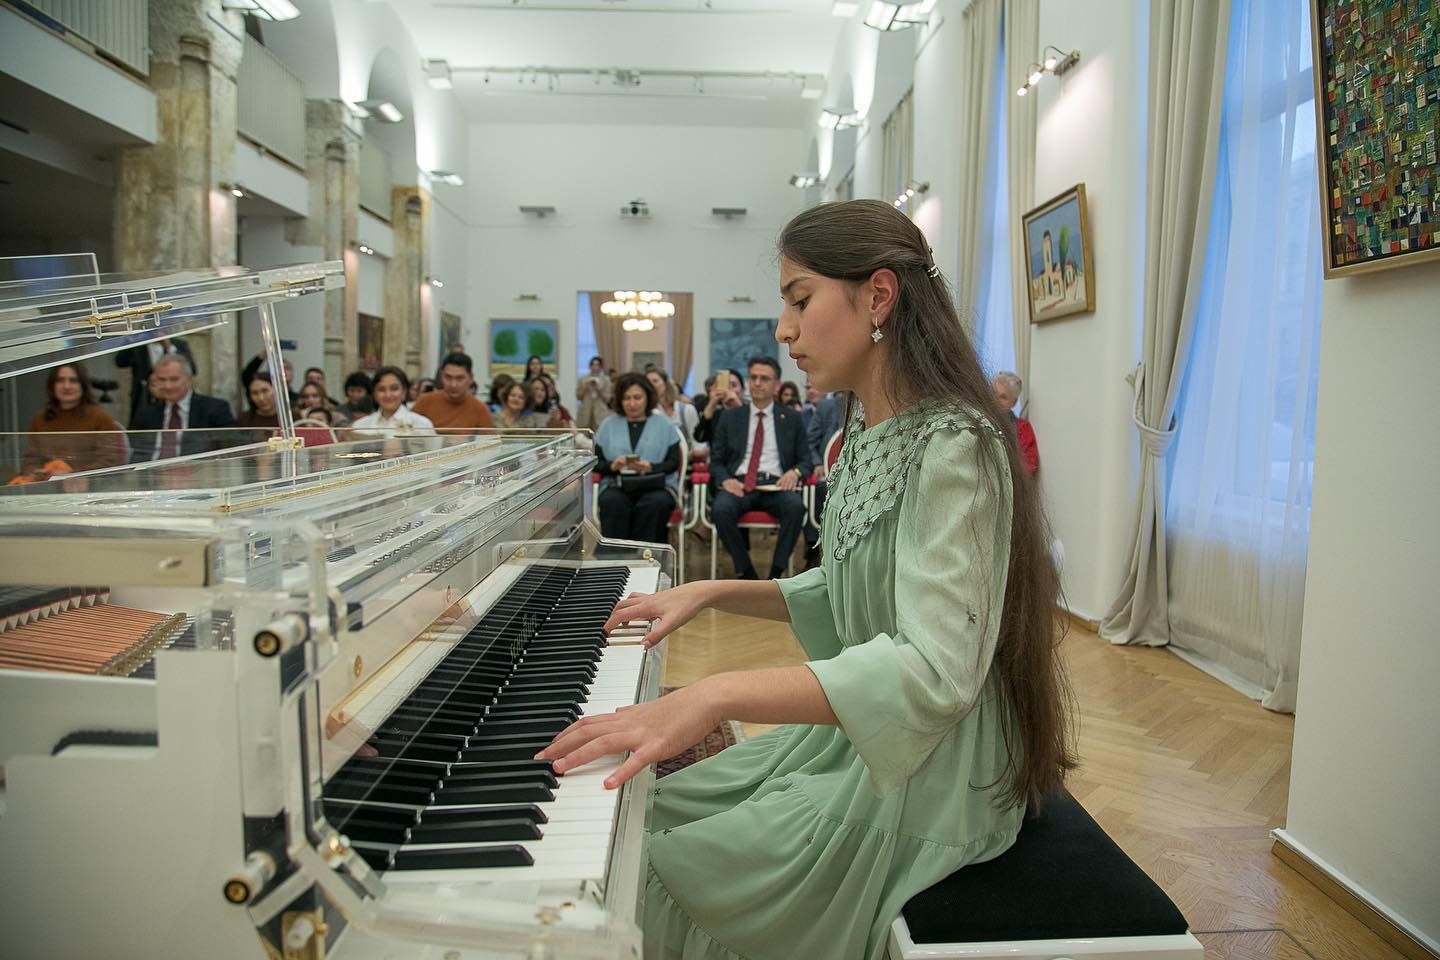 Am 12. November fand im Aserbaidschanischen Kulturzentrum in Wien ein Konzert mit jungen aserbaidschanischen Talenten statt. - Gallery Image